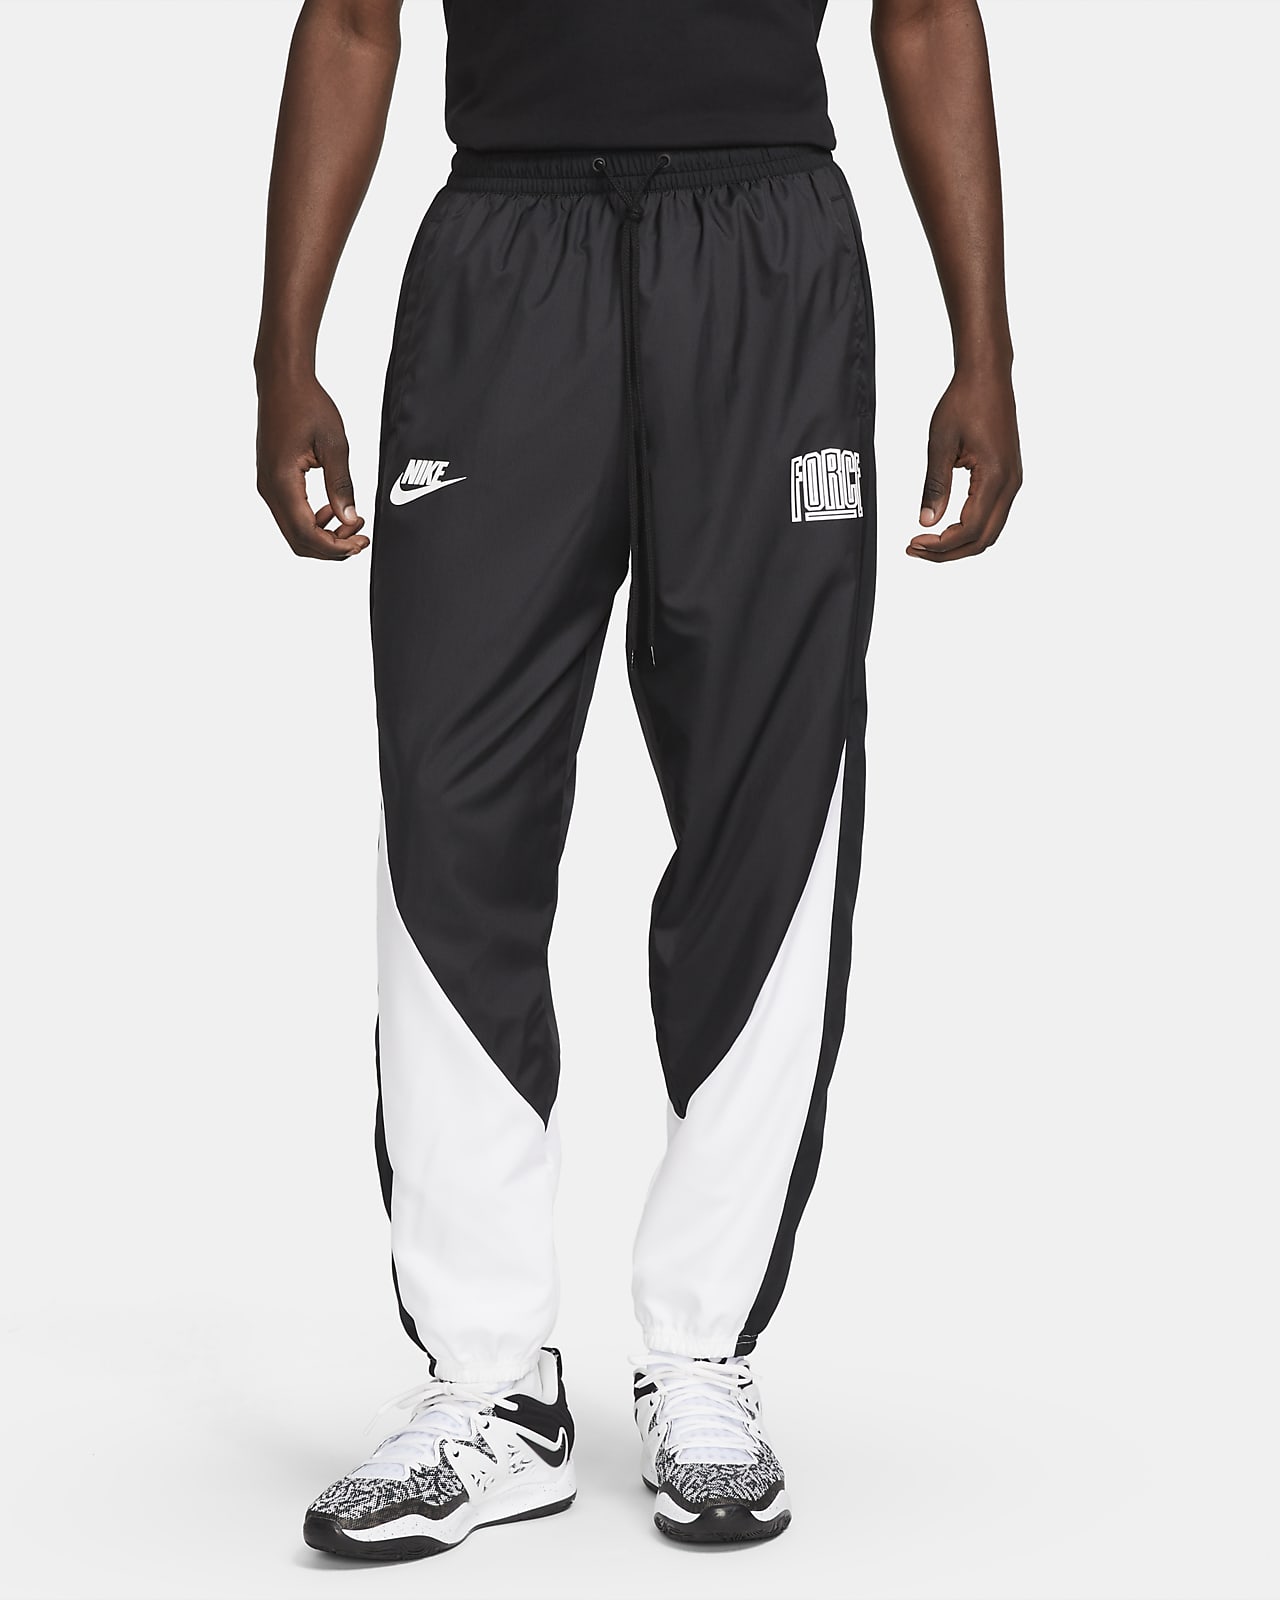 Nike Starting 5 Men's Basketball Trousers